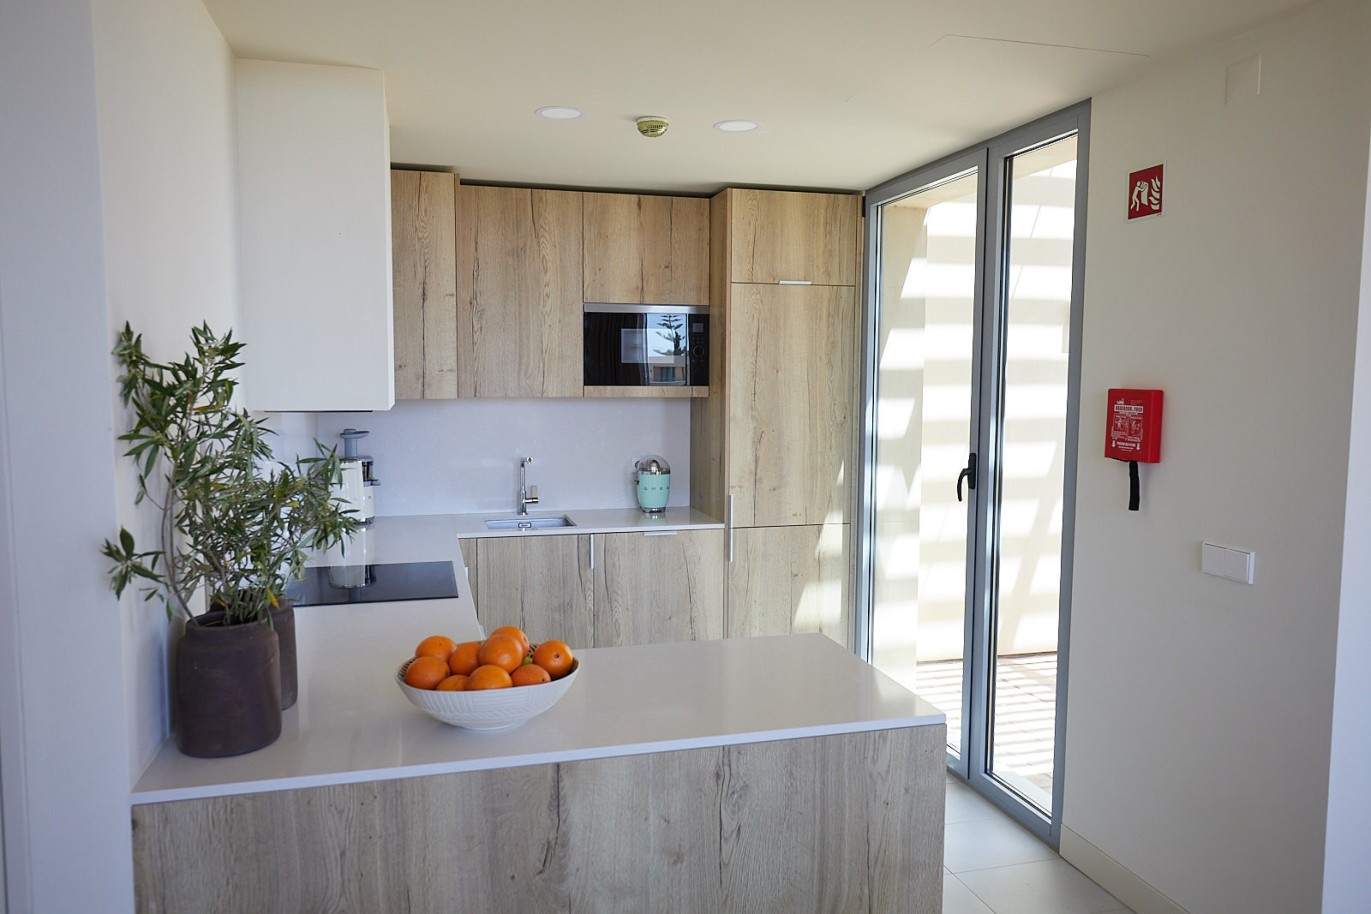 3 bedroom flat in resort, for sale in Porches, Algarve_230748